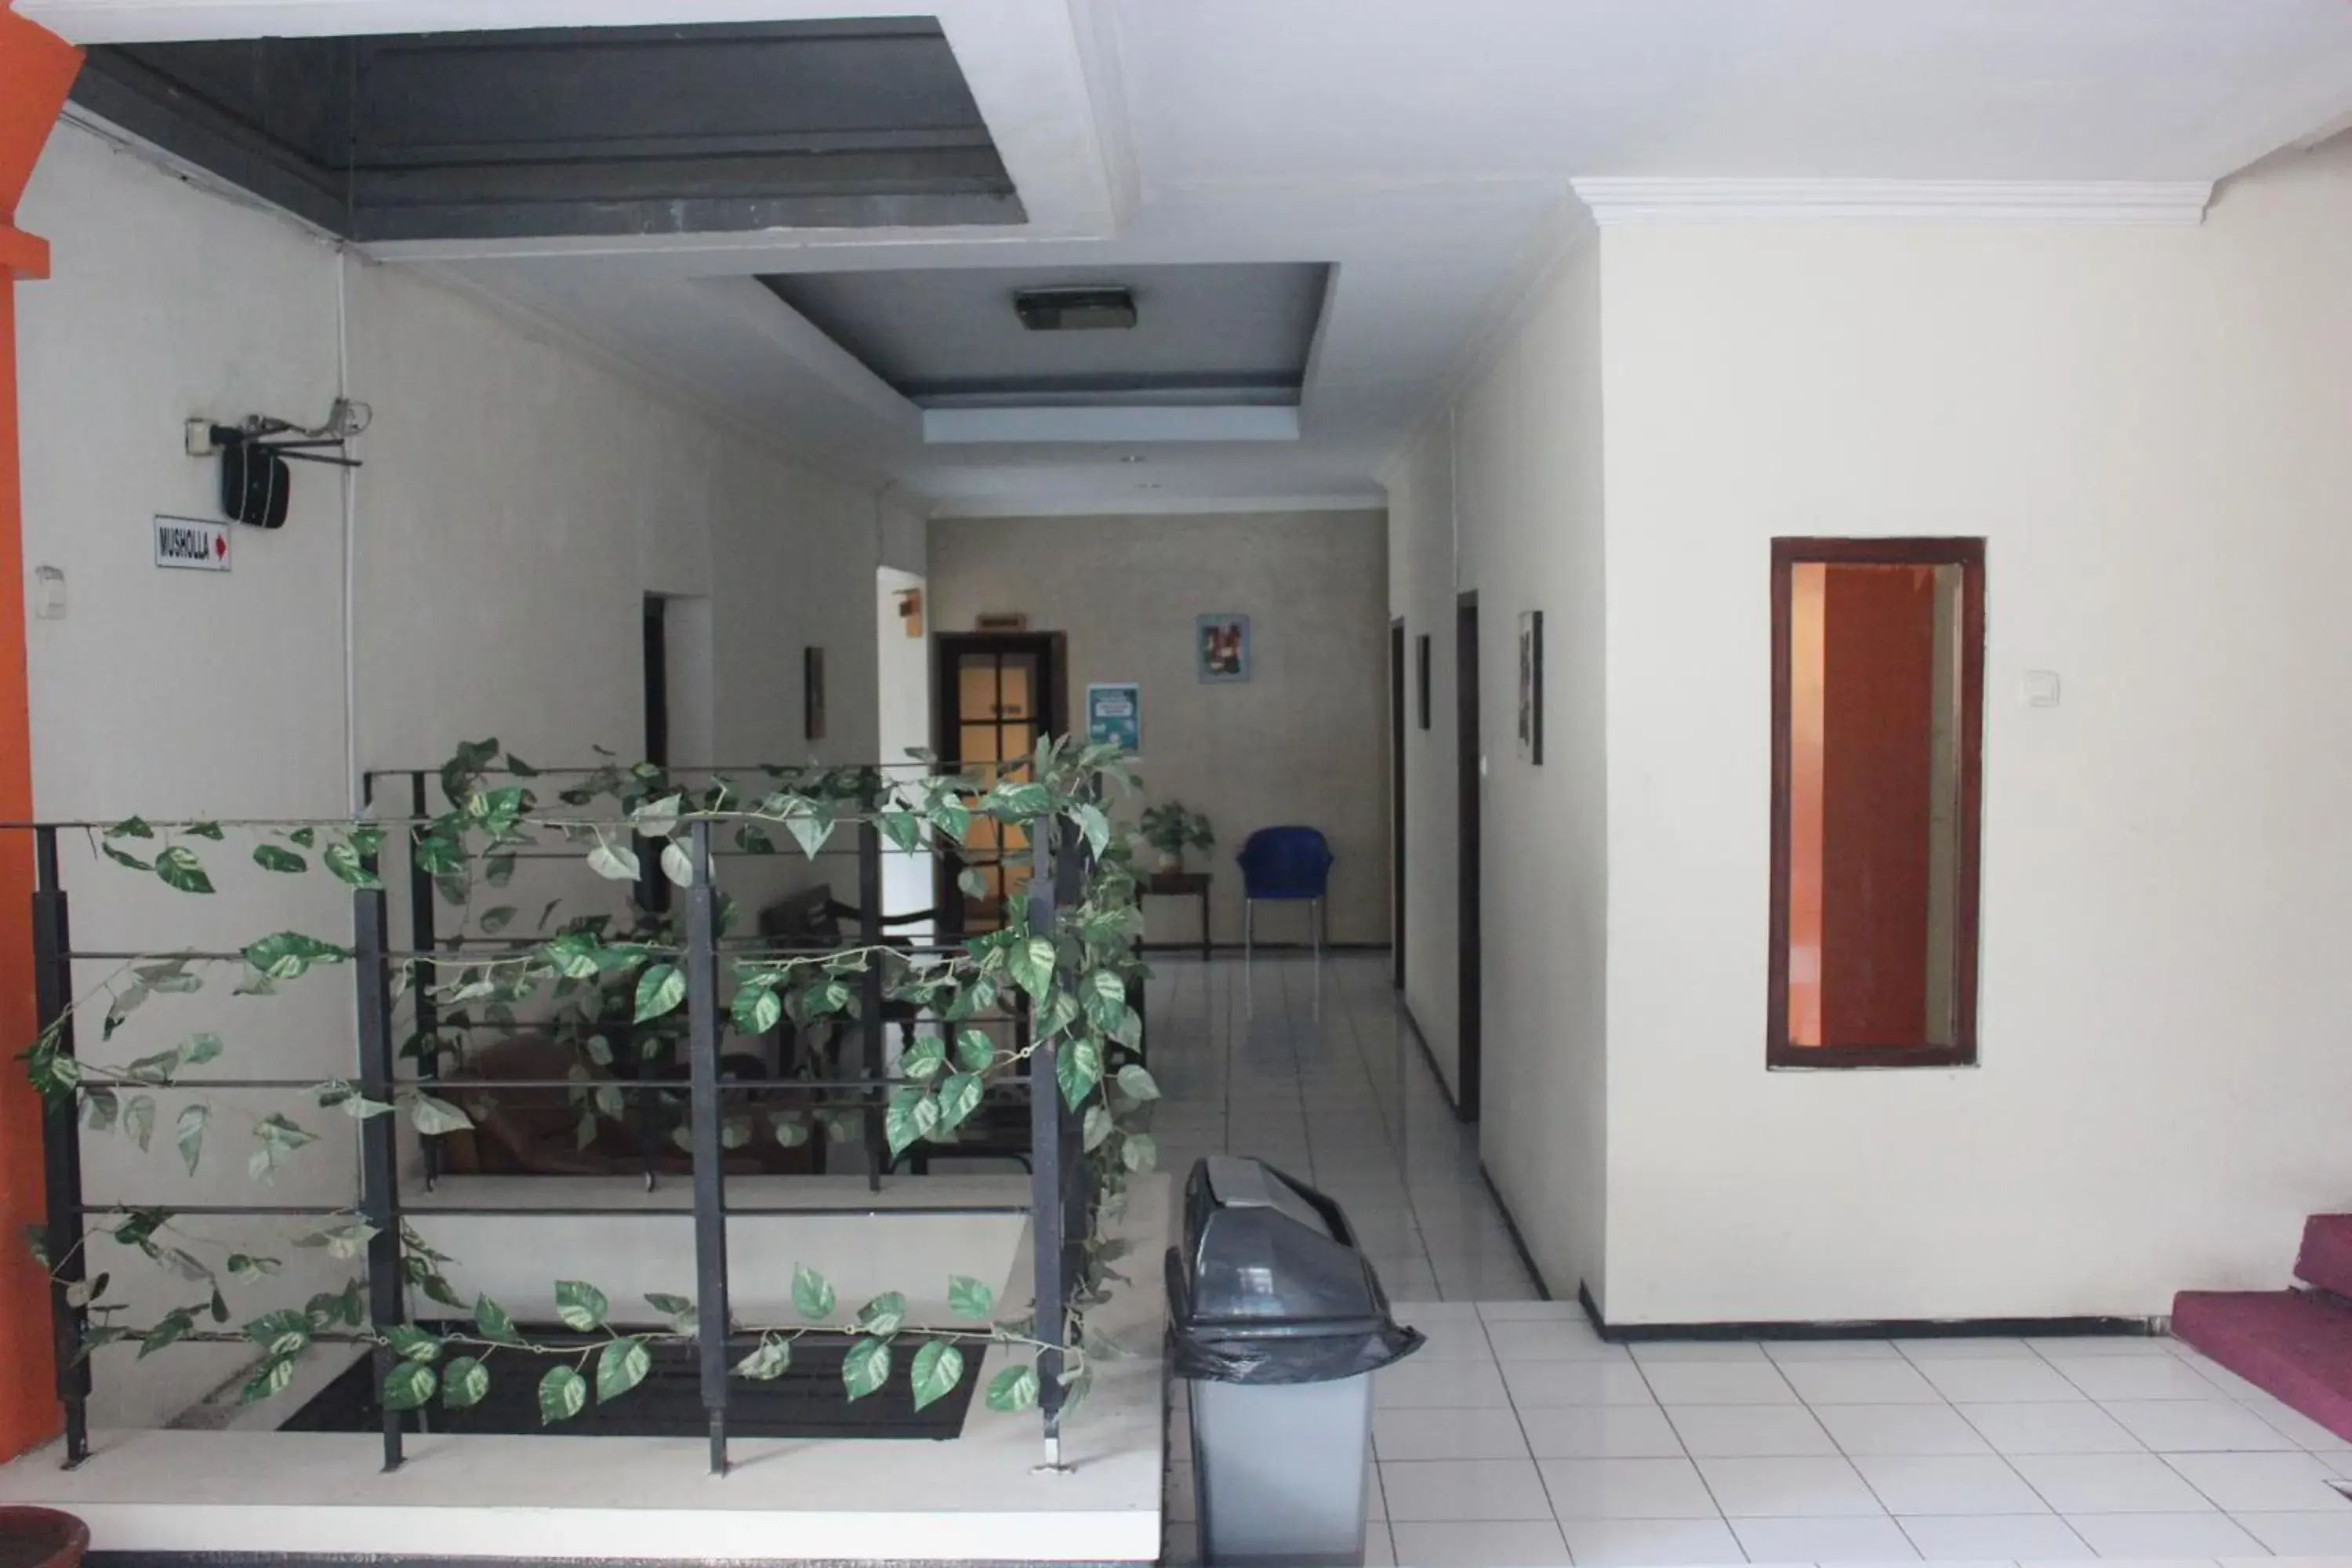 Area and facilities in OYO 206 Hotel Candra Kirana